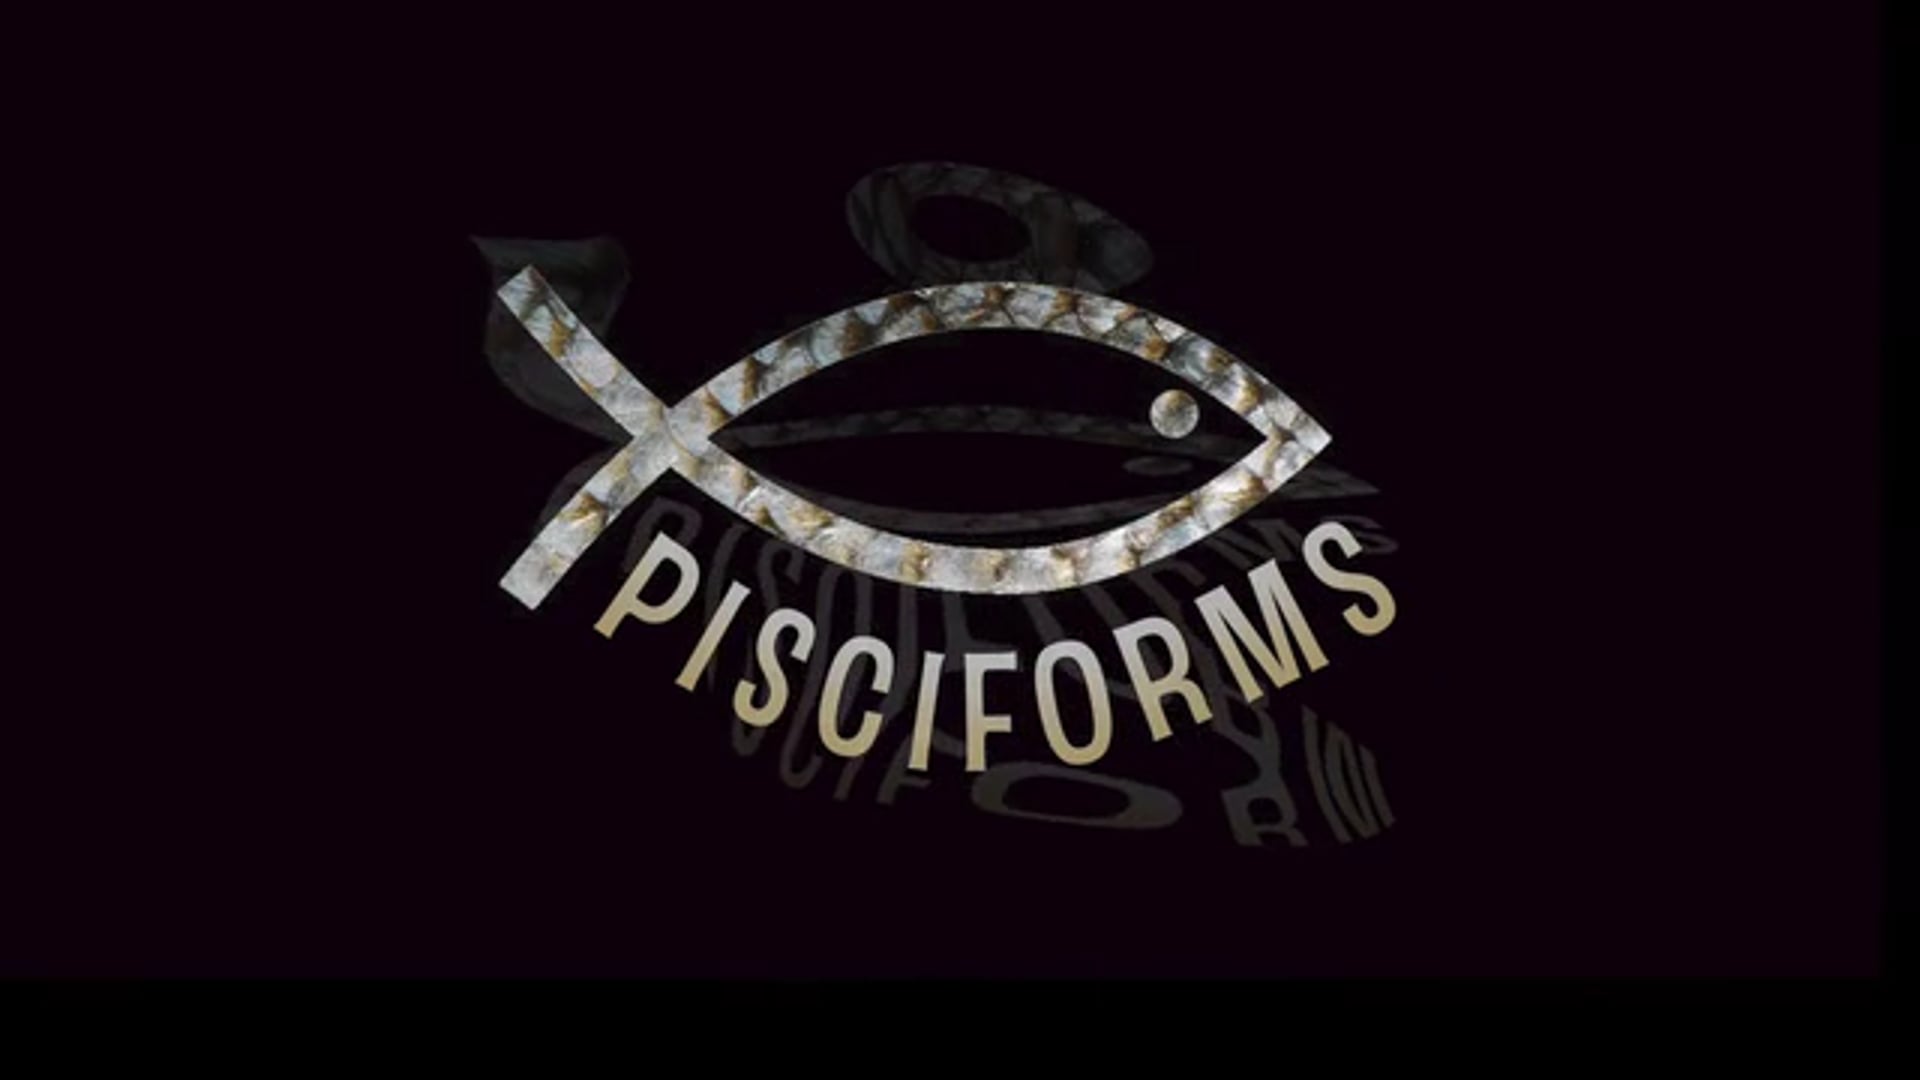 Pisciforms